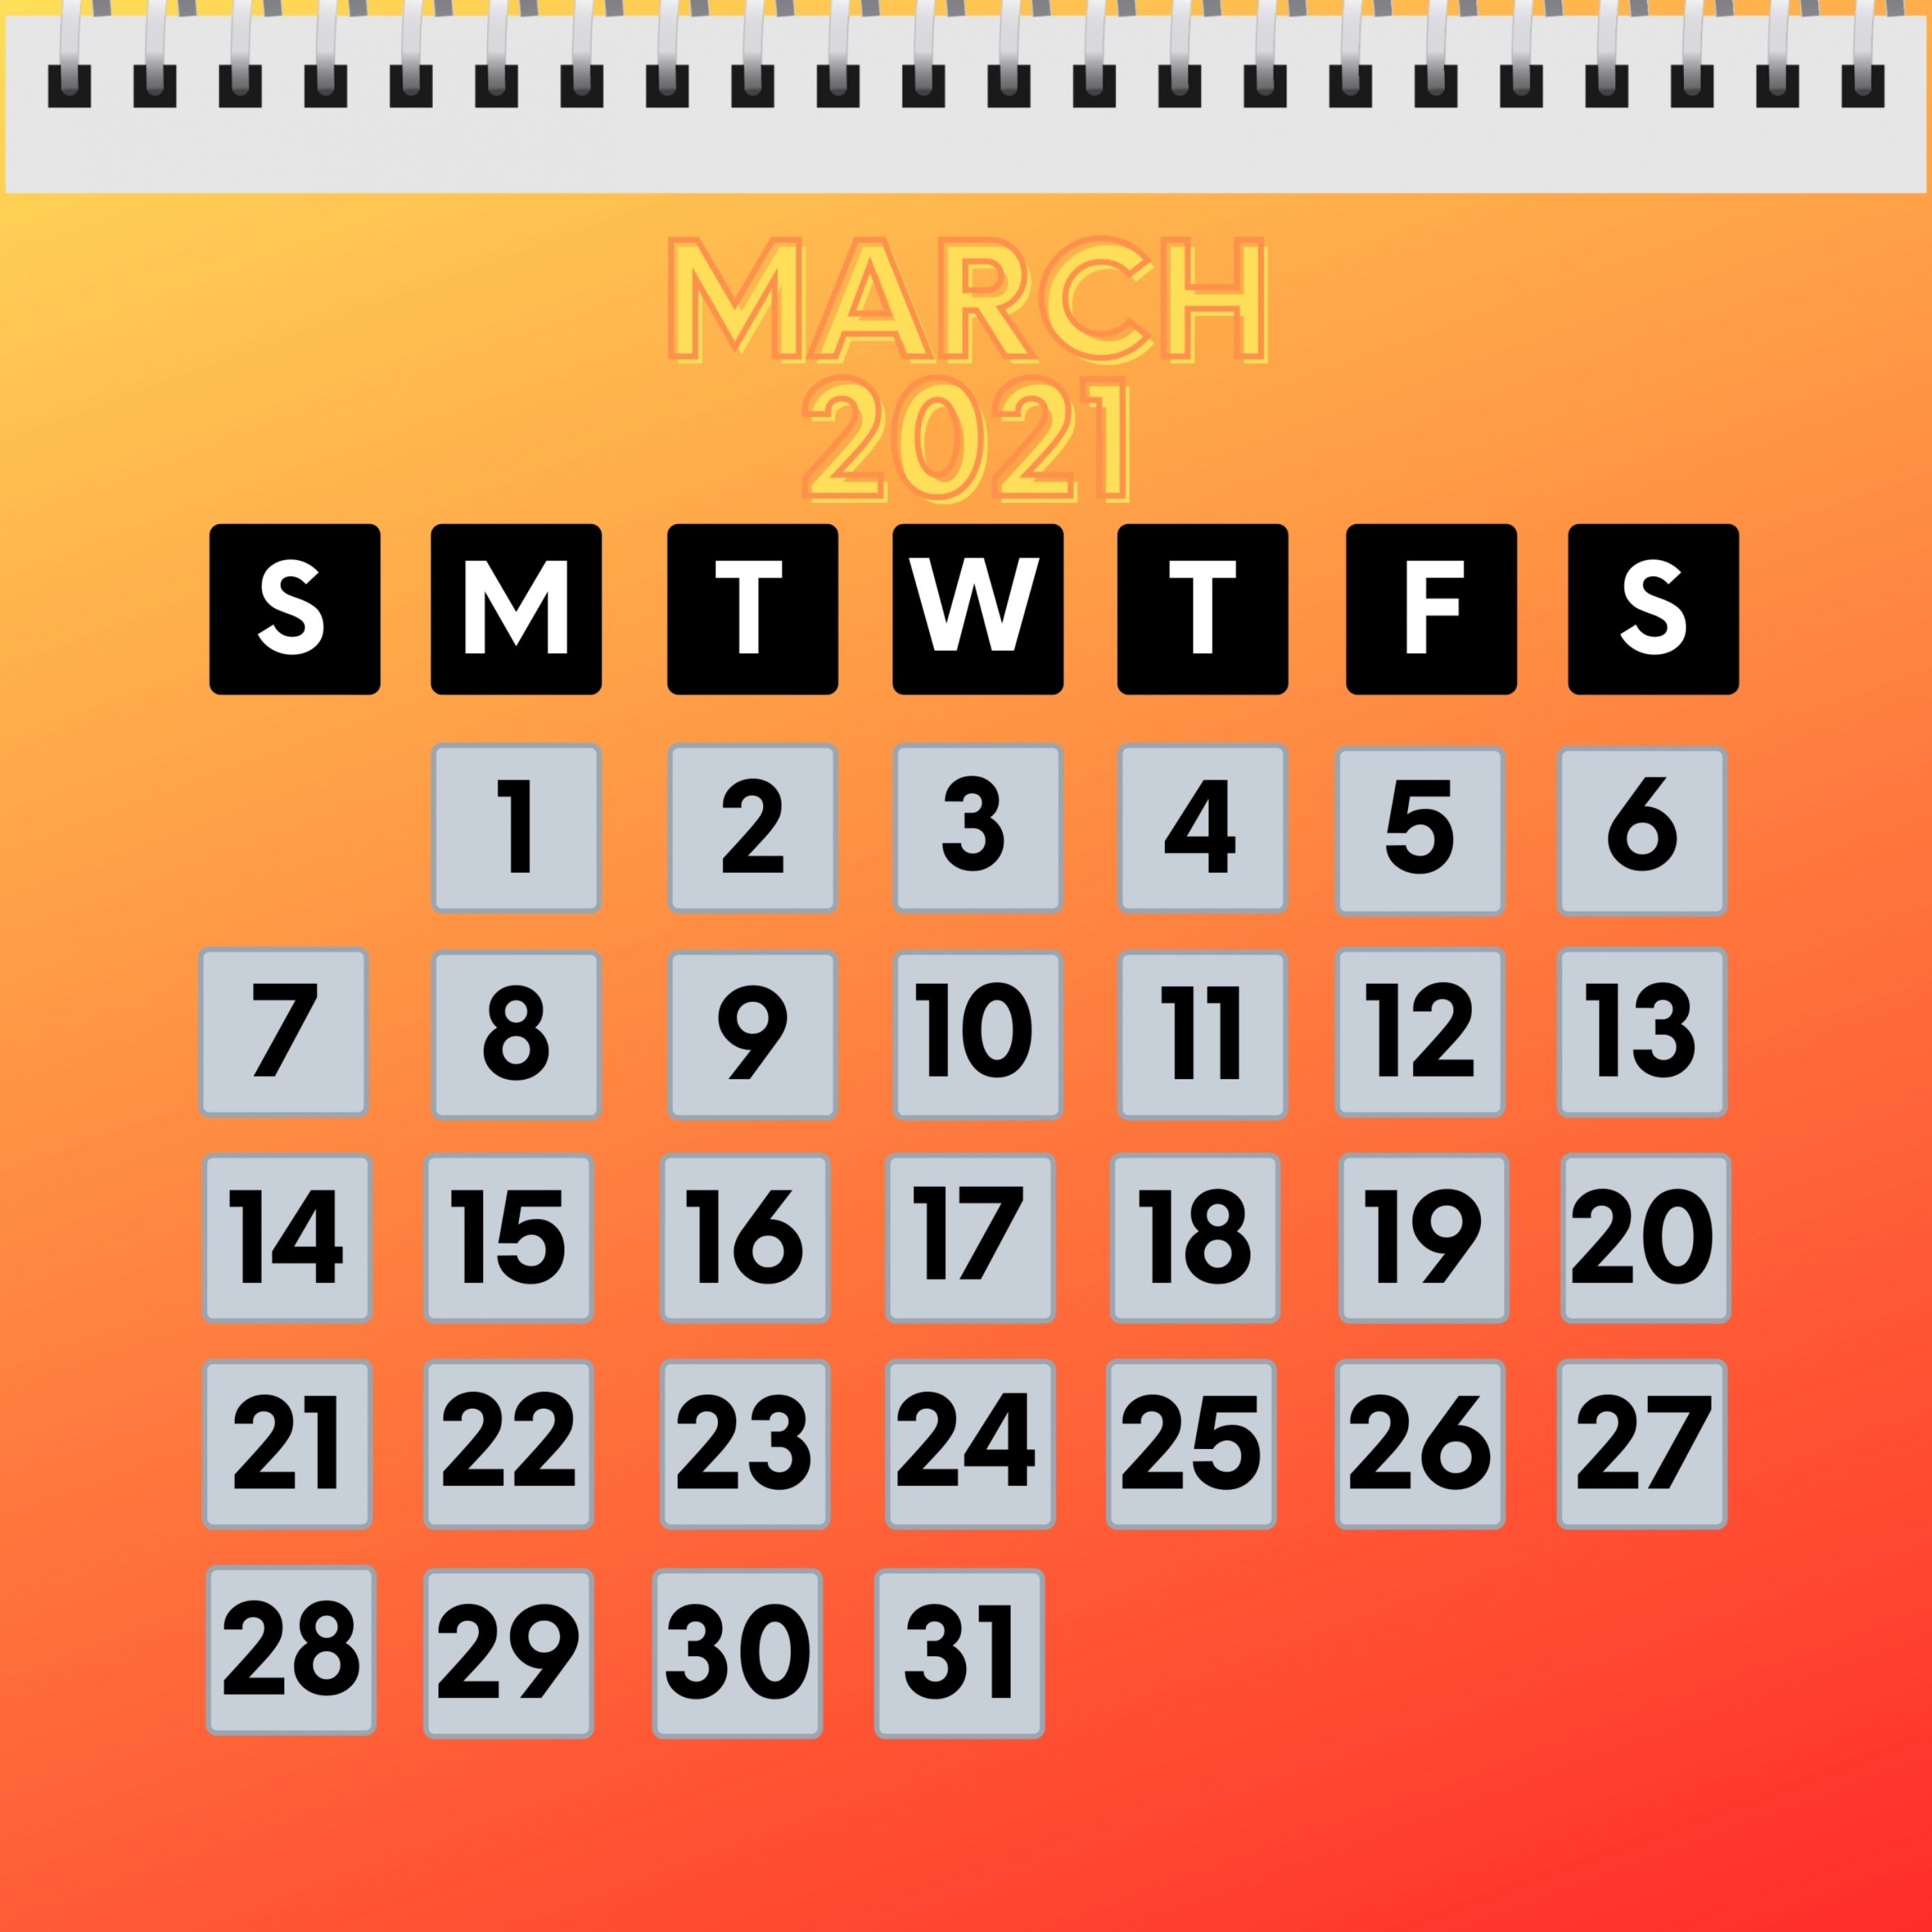 2780x2780 Parallax wallpaper 4k March 2021 Calendar iPad Wallpaper 2780x2780 pixels resolution